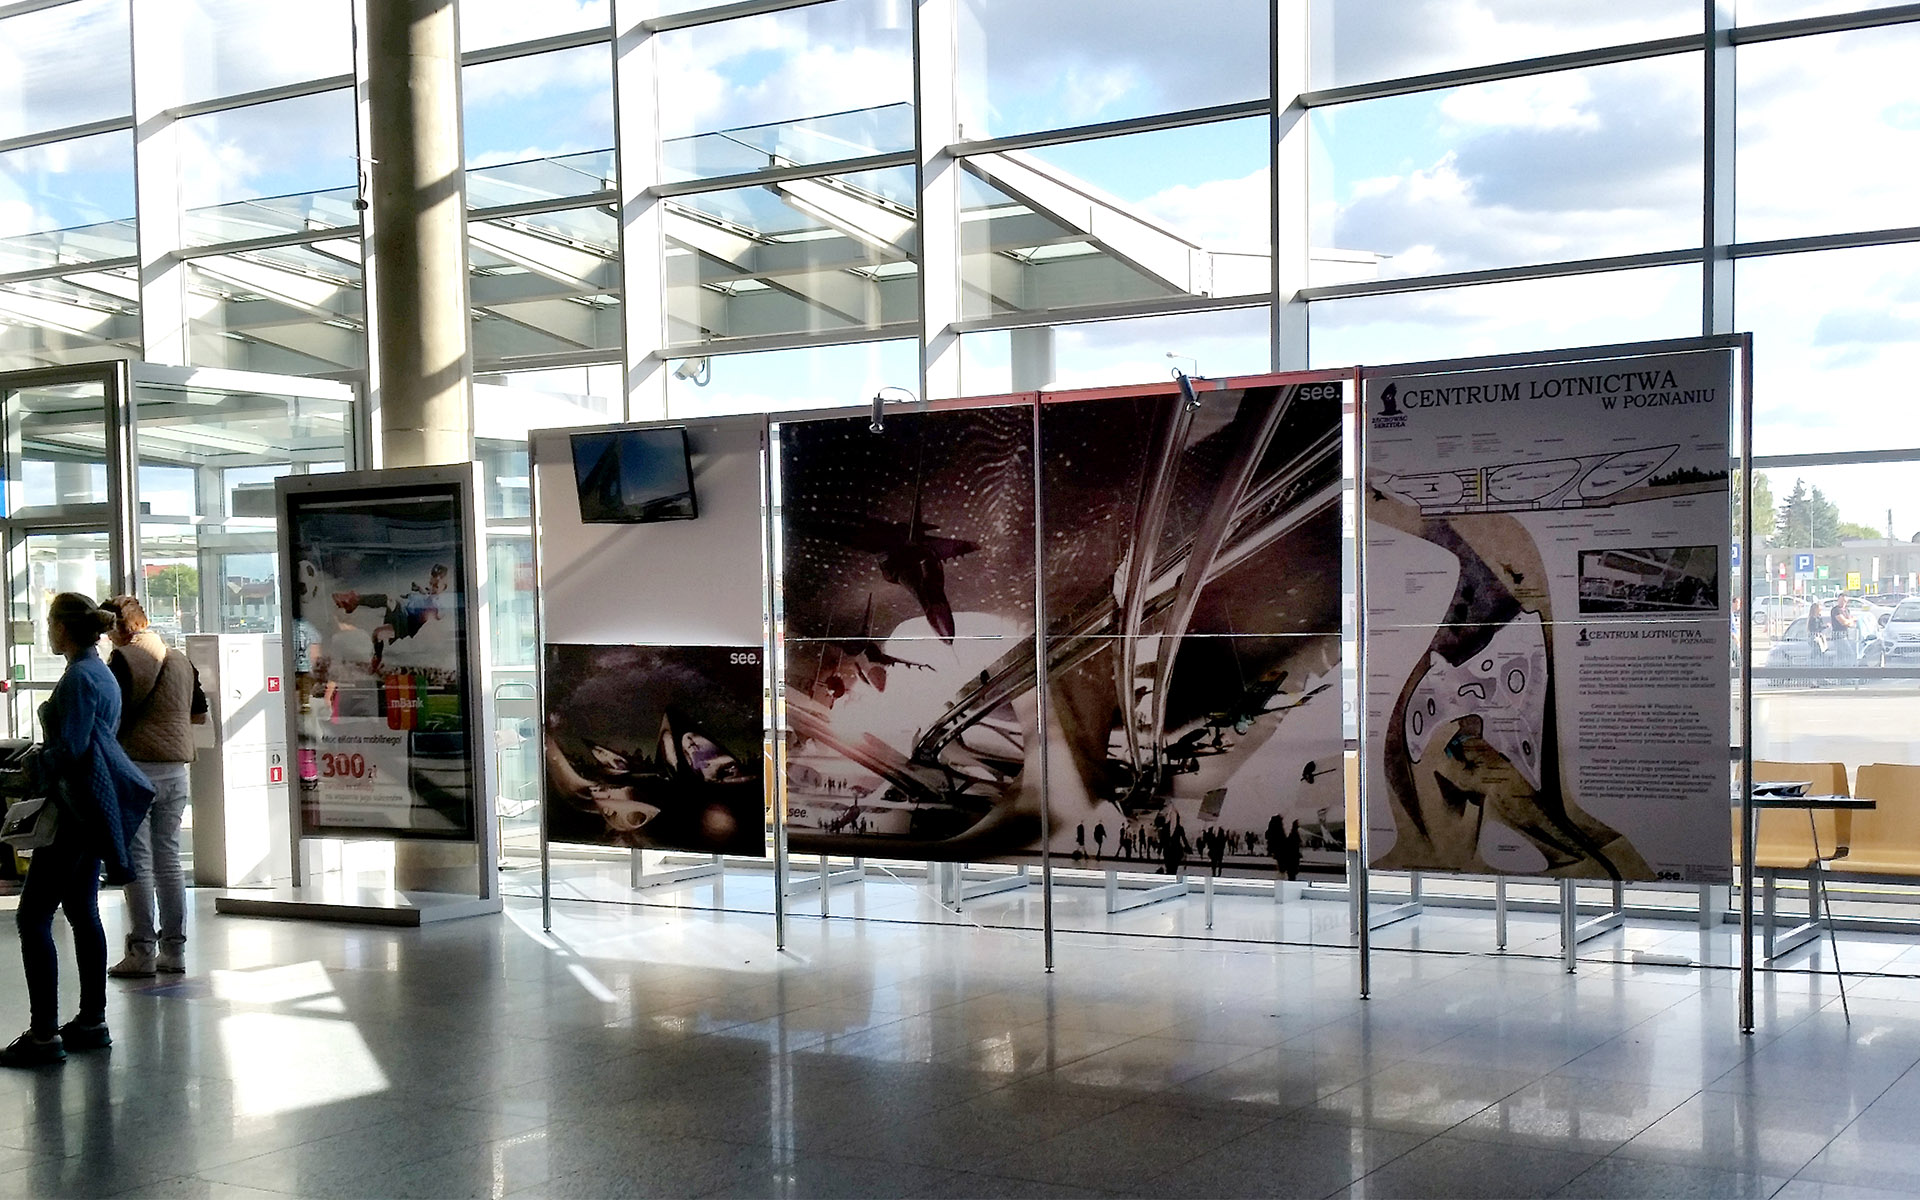 Wystawa na lotnisku Ławica projektu Centrum Lotnictwa w Poznaniu